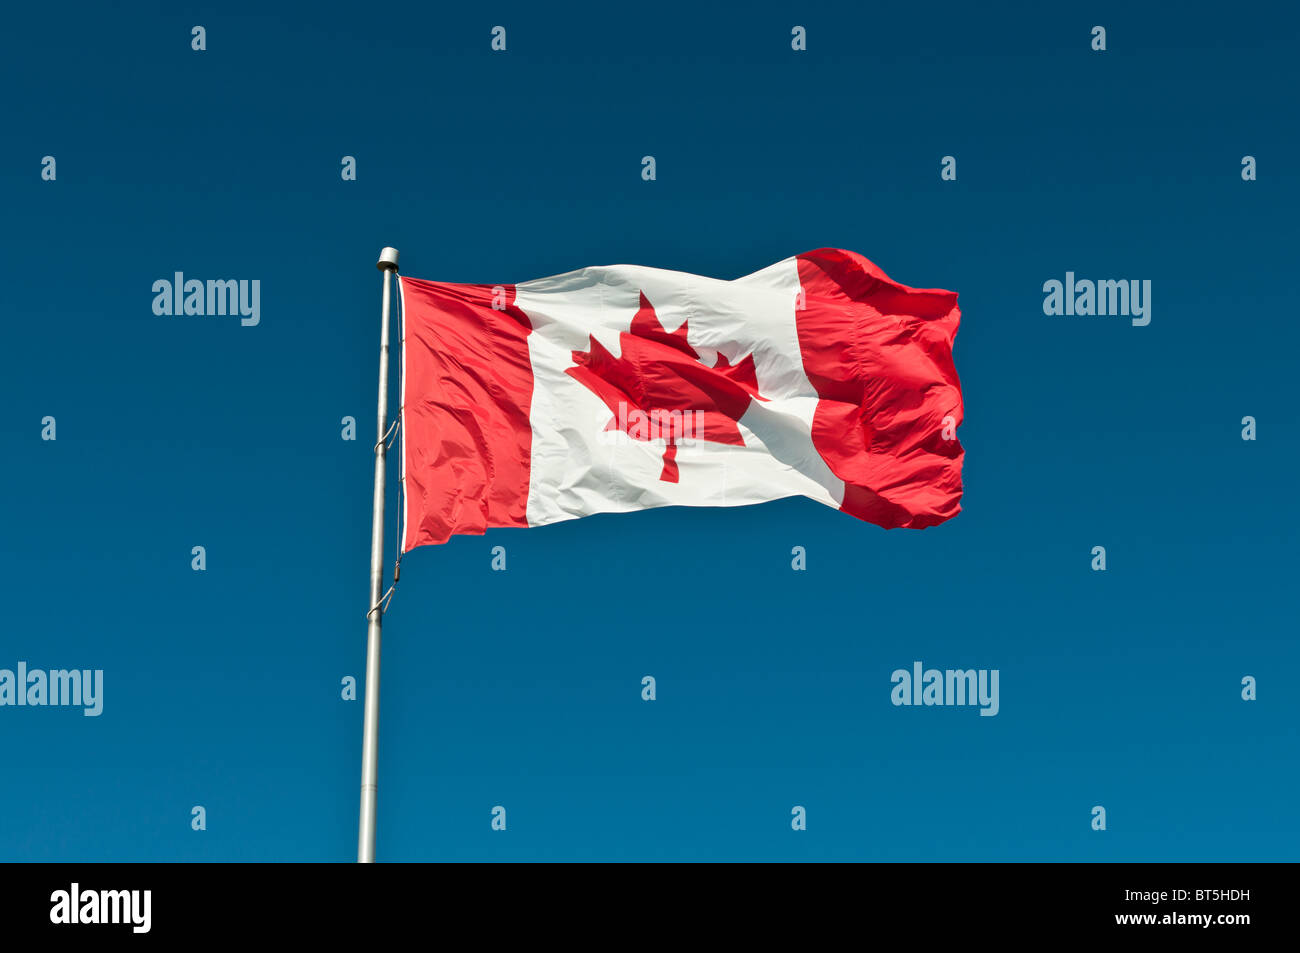 Una bandera Canadiense olas en una brisa fuerte delante de un cielo azul claro Foto de stock